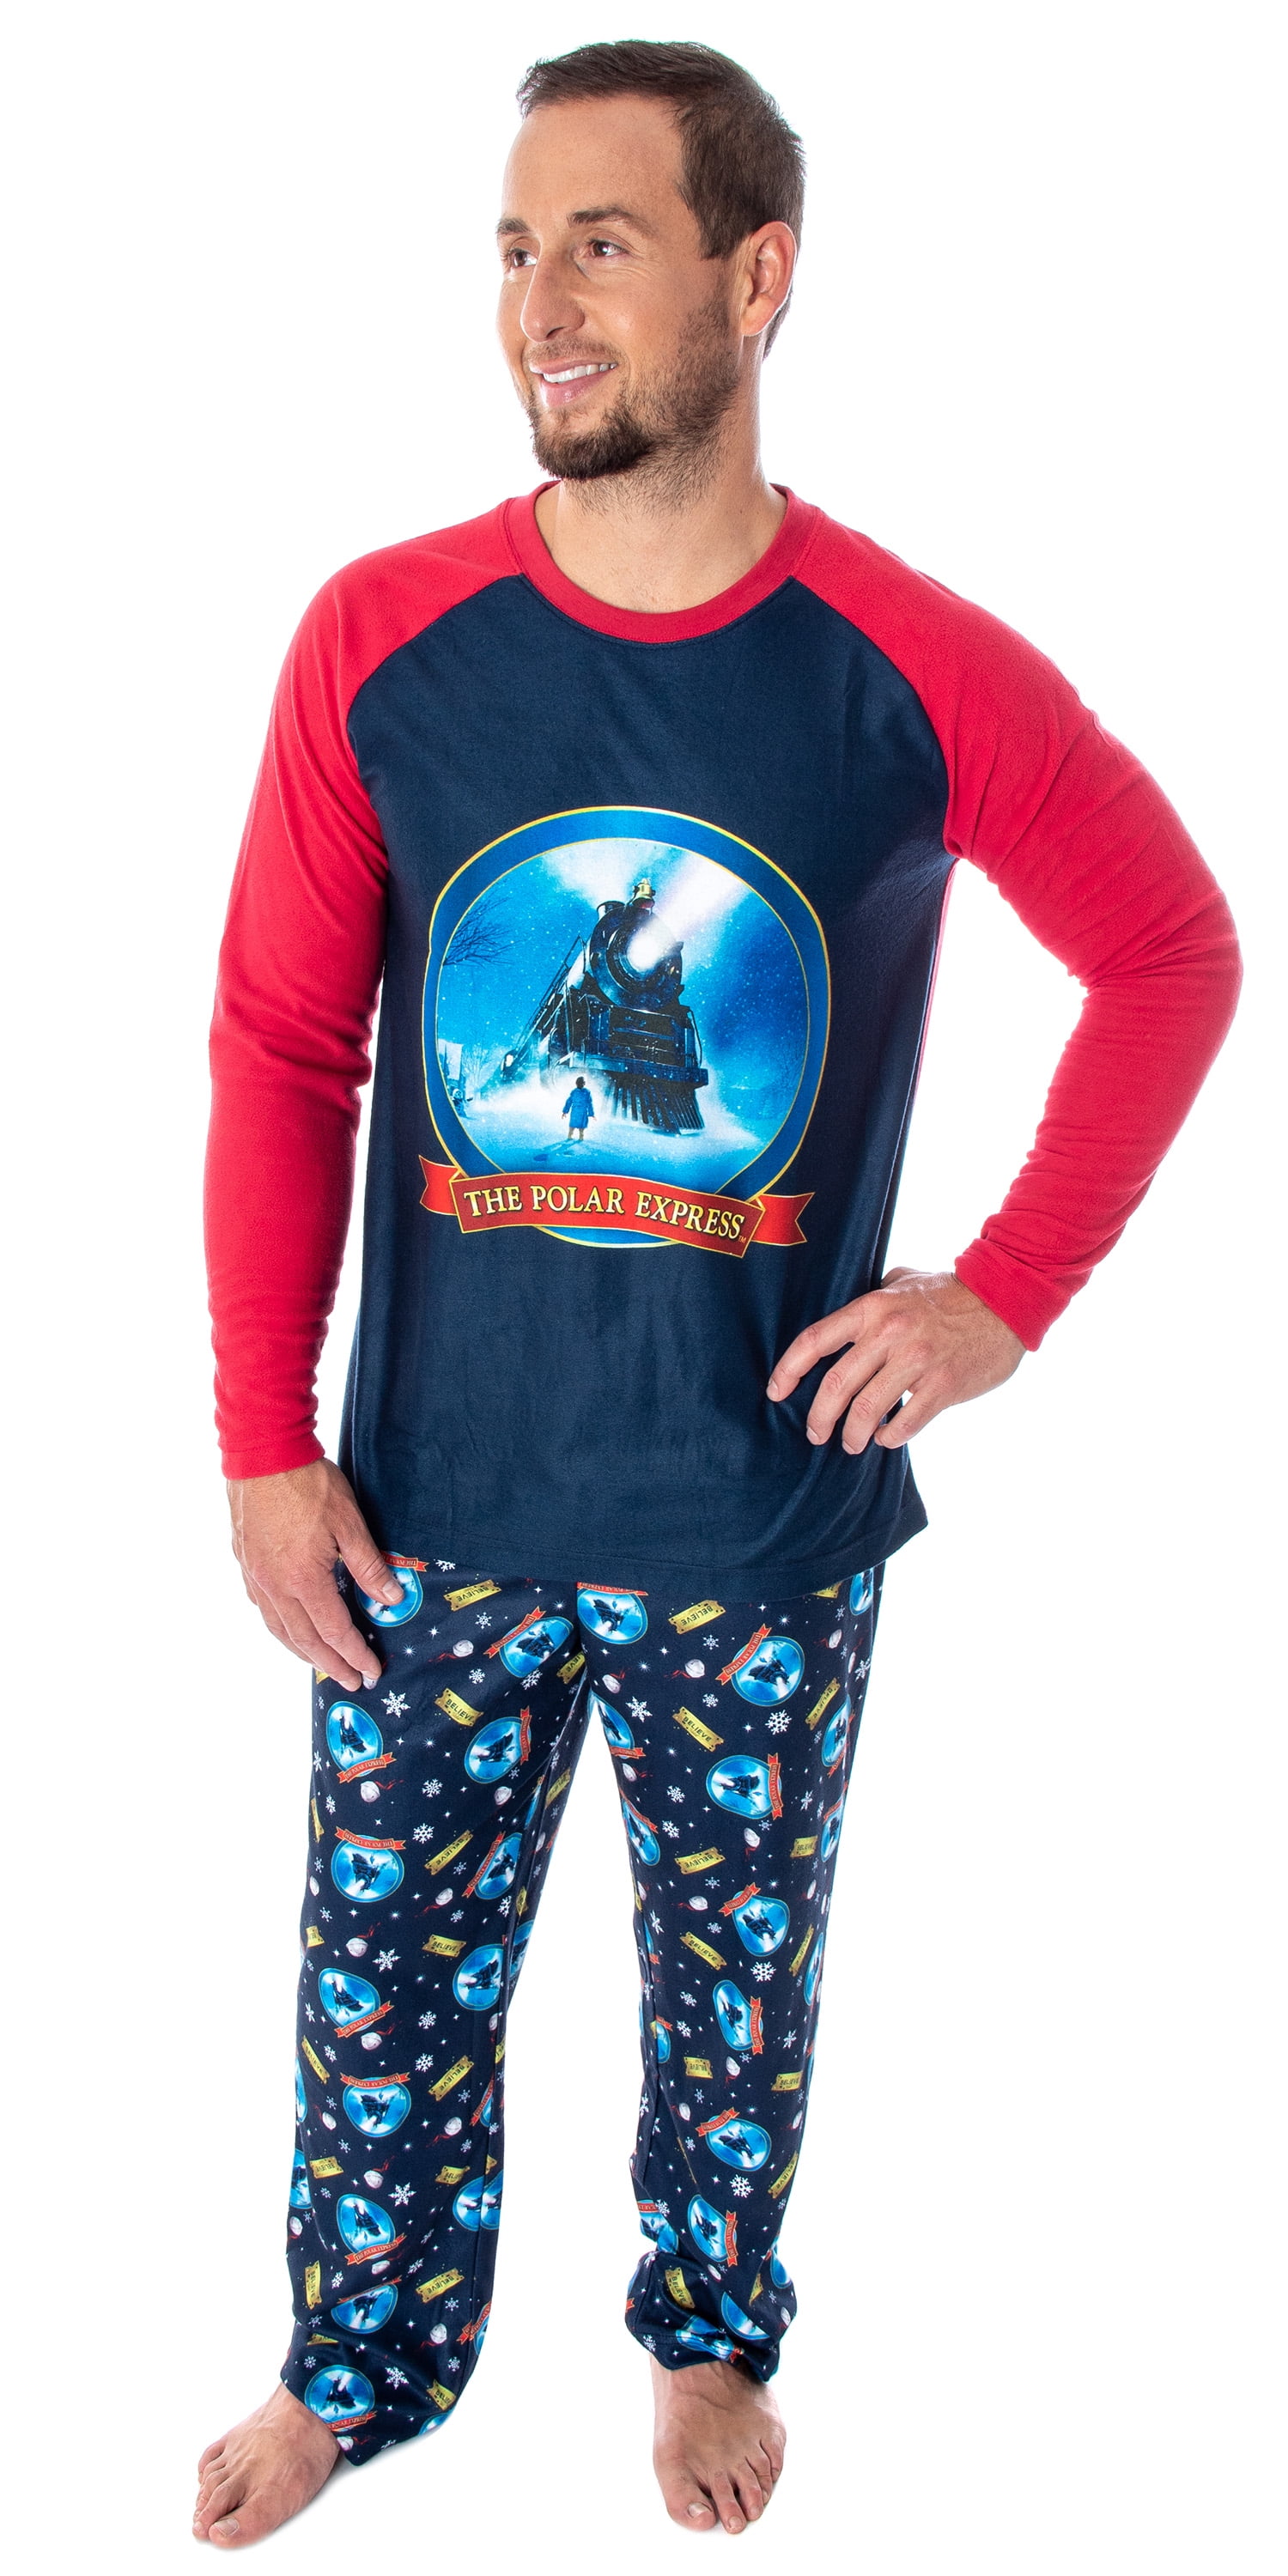 The Polar Express Train Men's Raglan Shirt And Pants 2 Piece Pajama Set ...